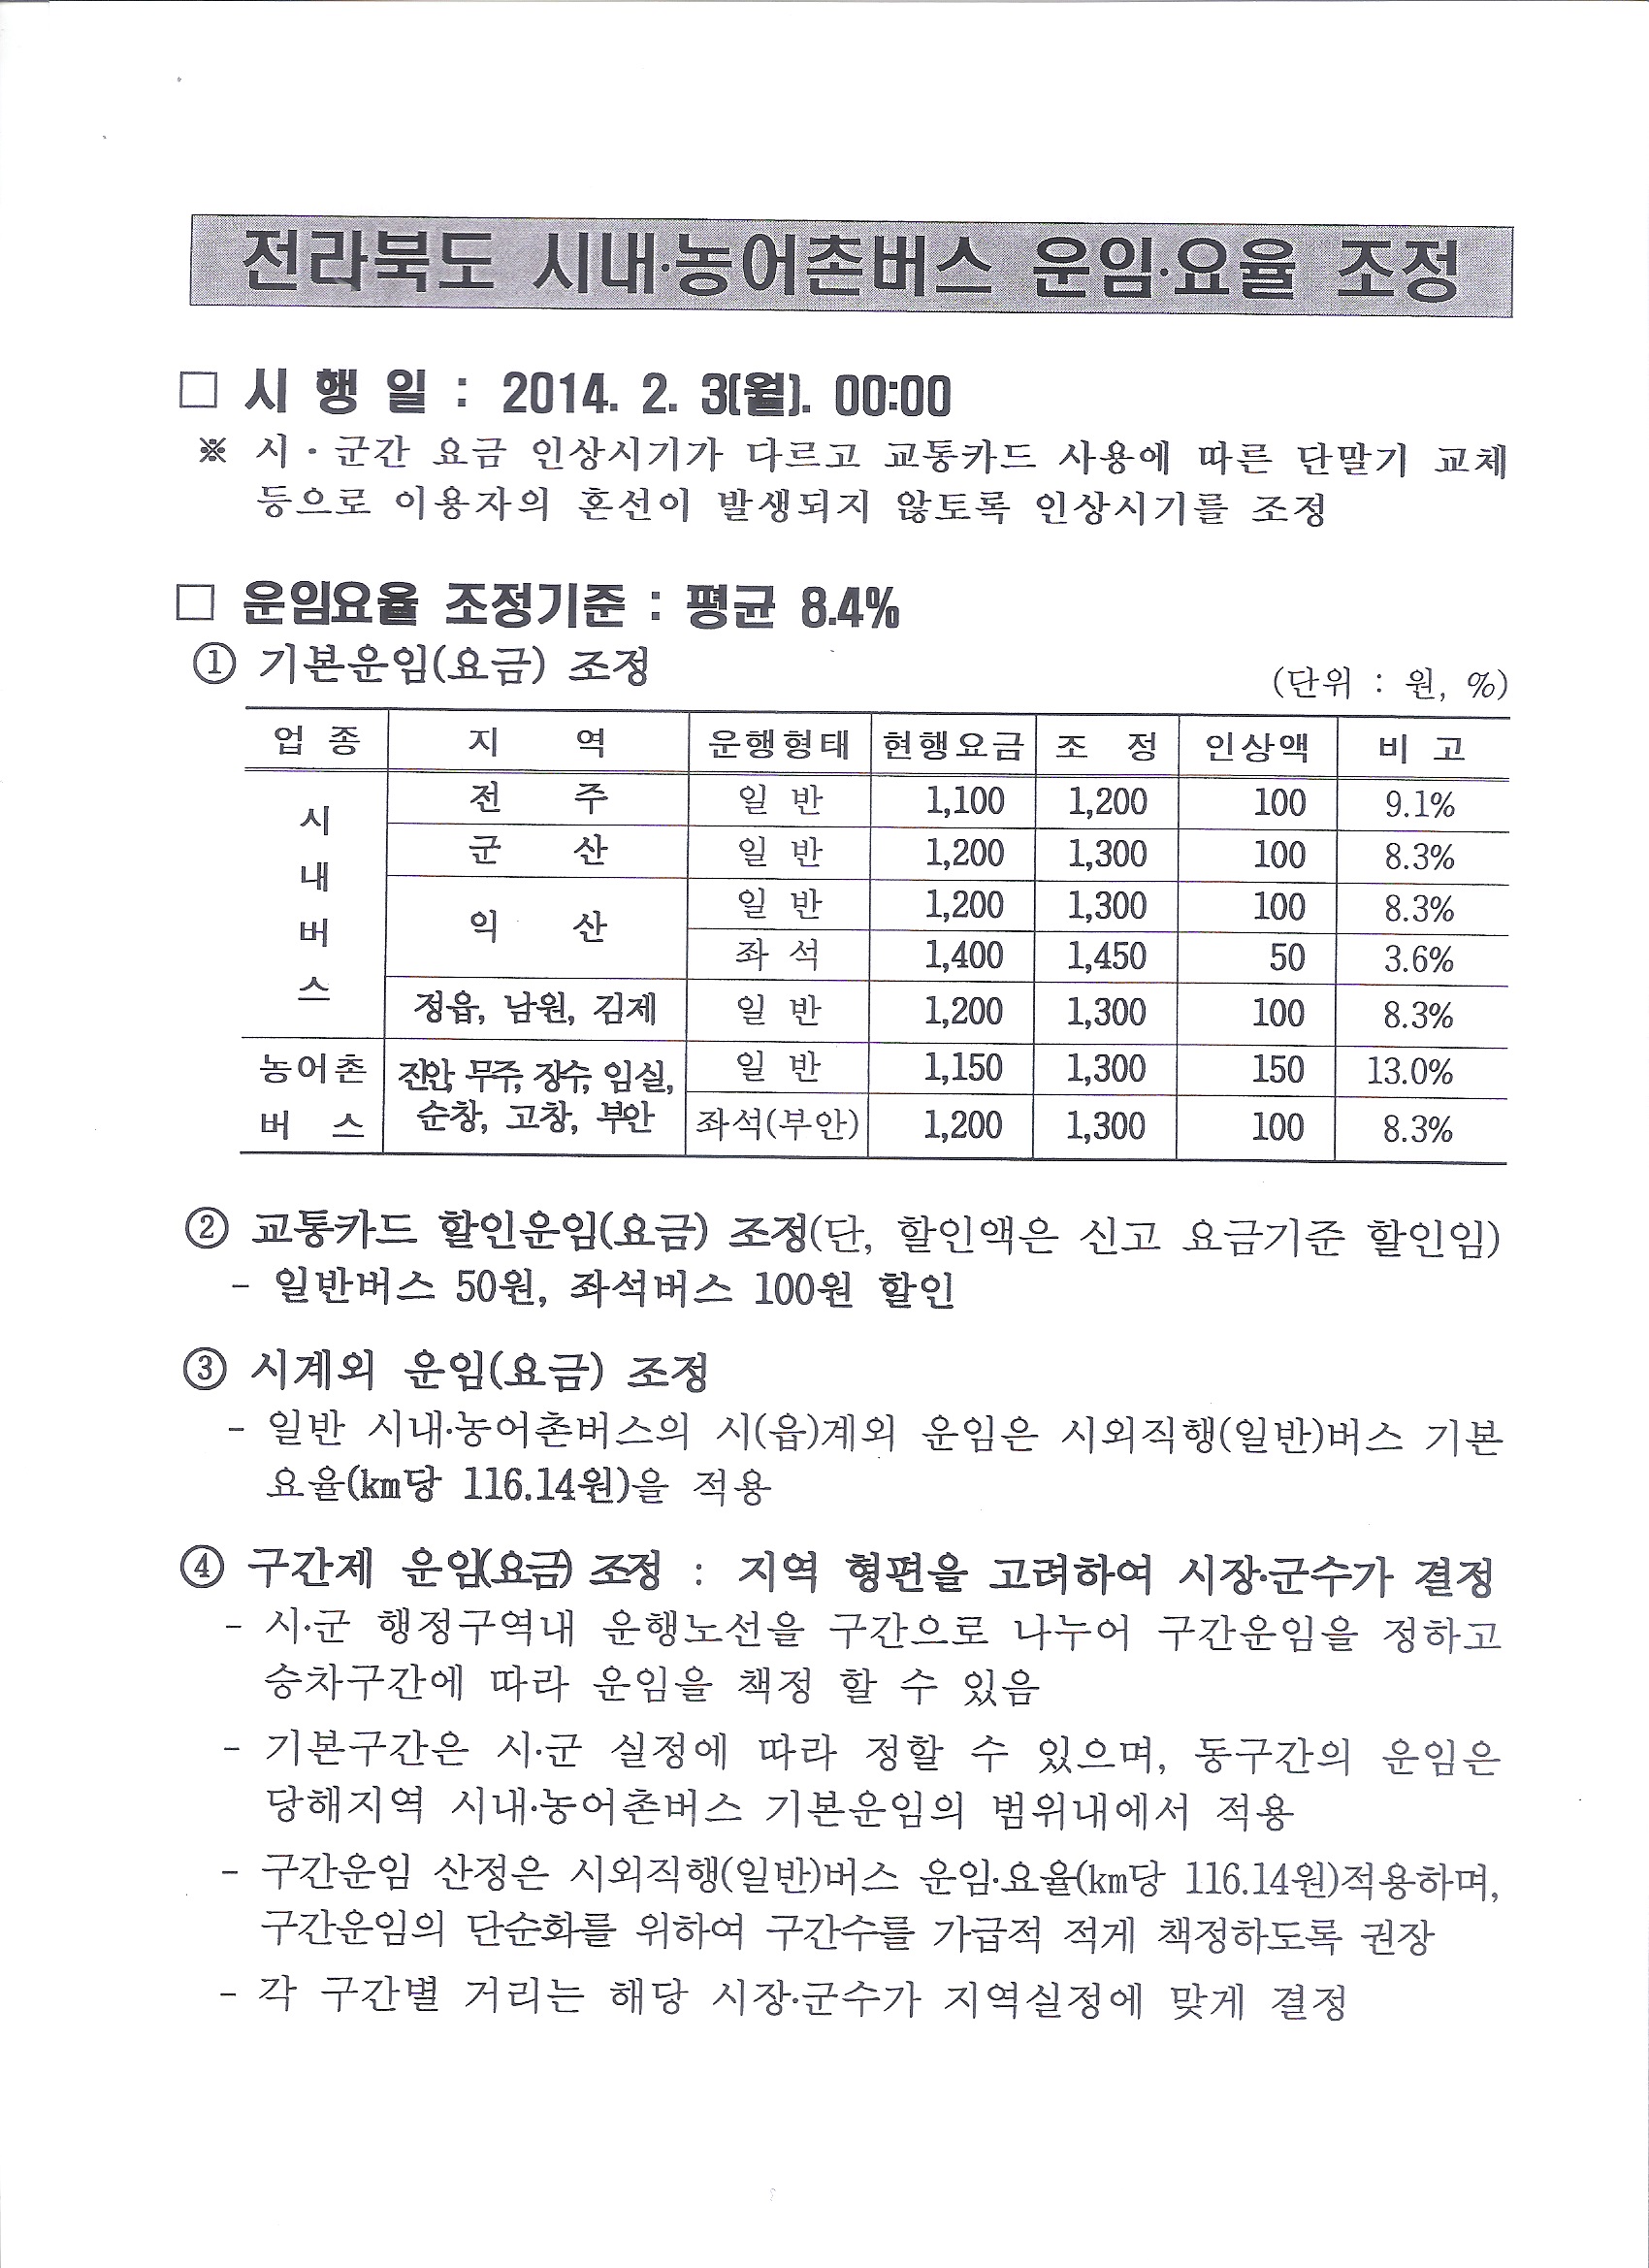 버스요금_전라북도 대중교통과-2551(2014.1.29)호 3.jpg